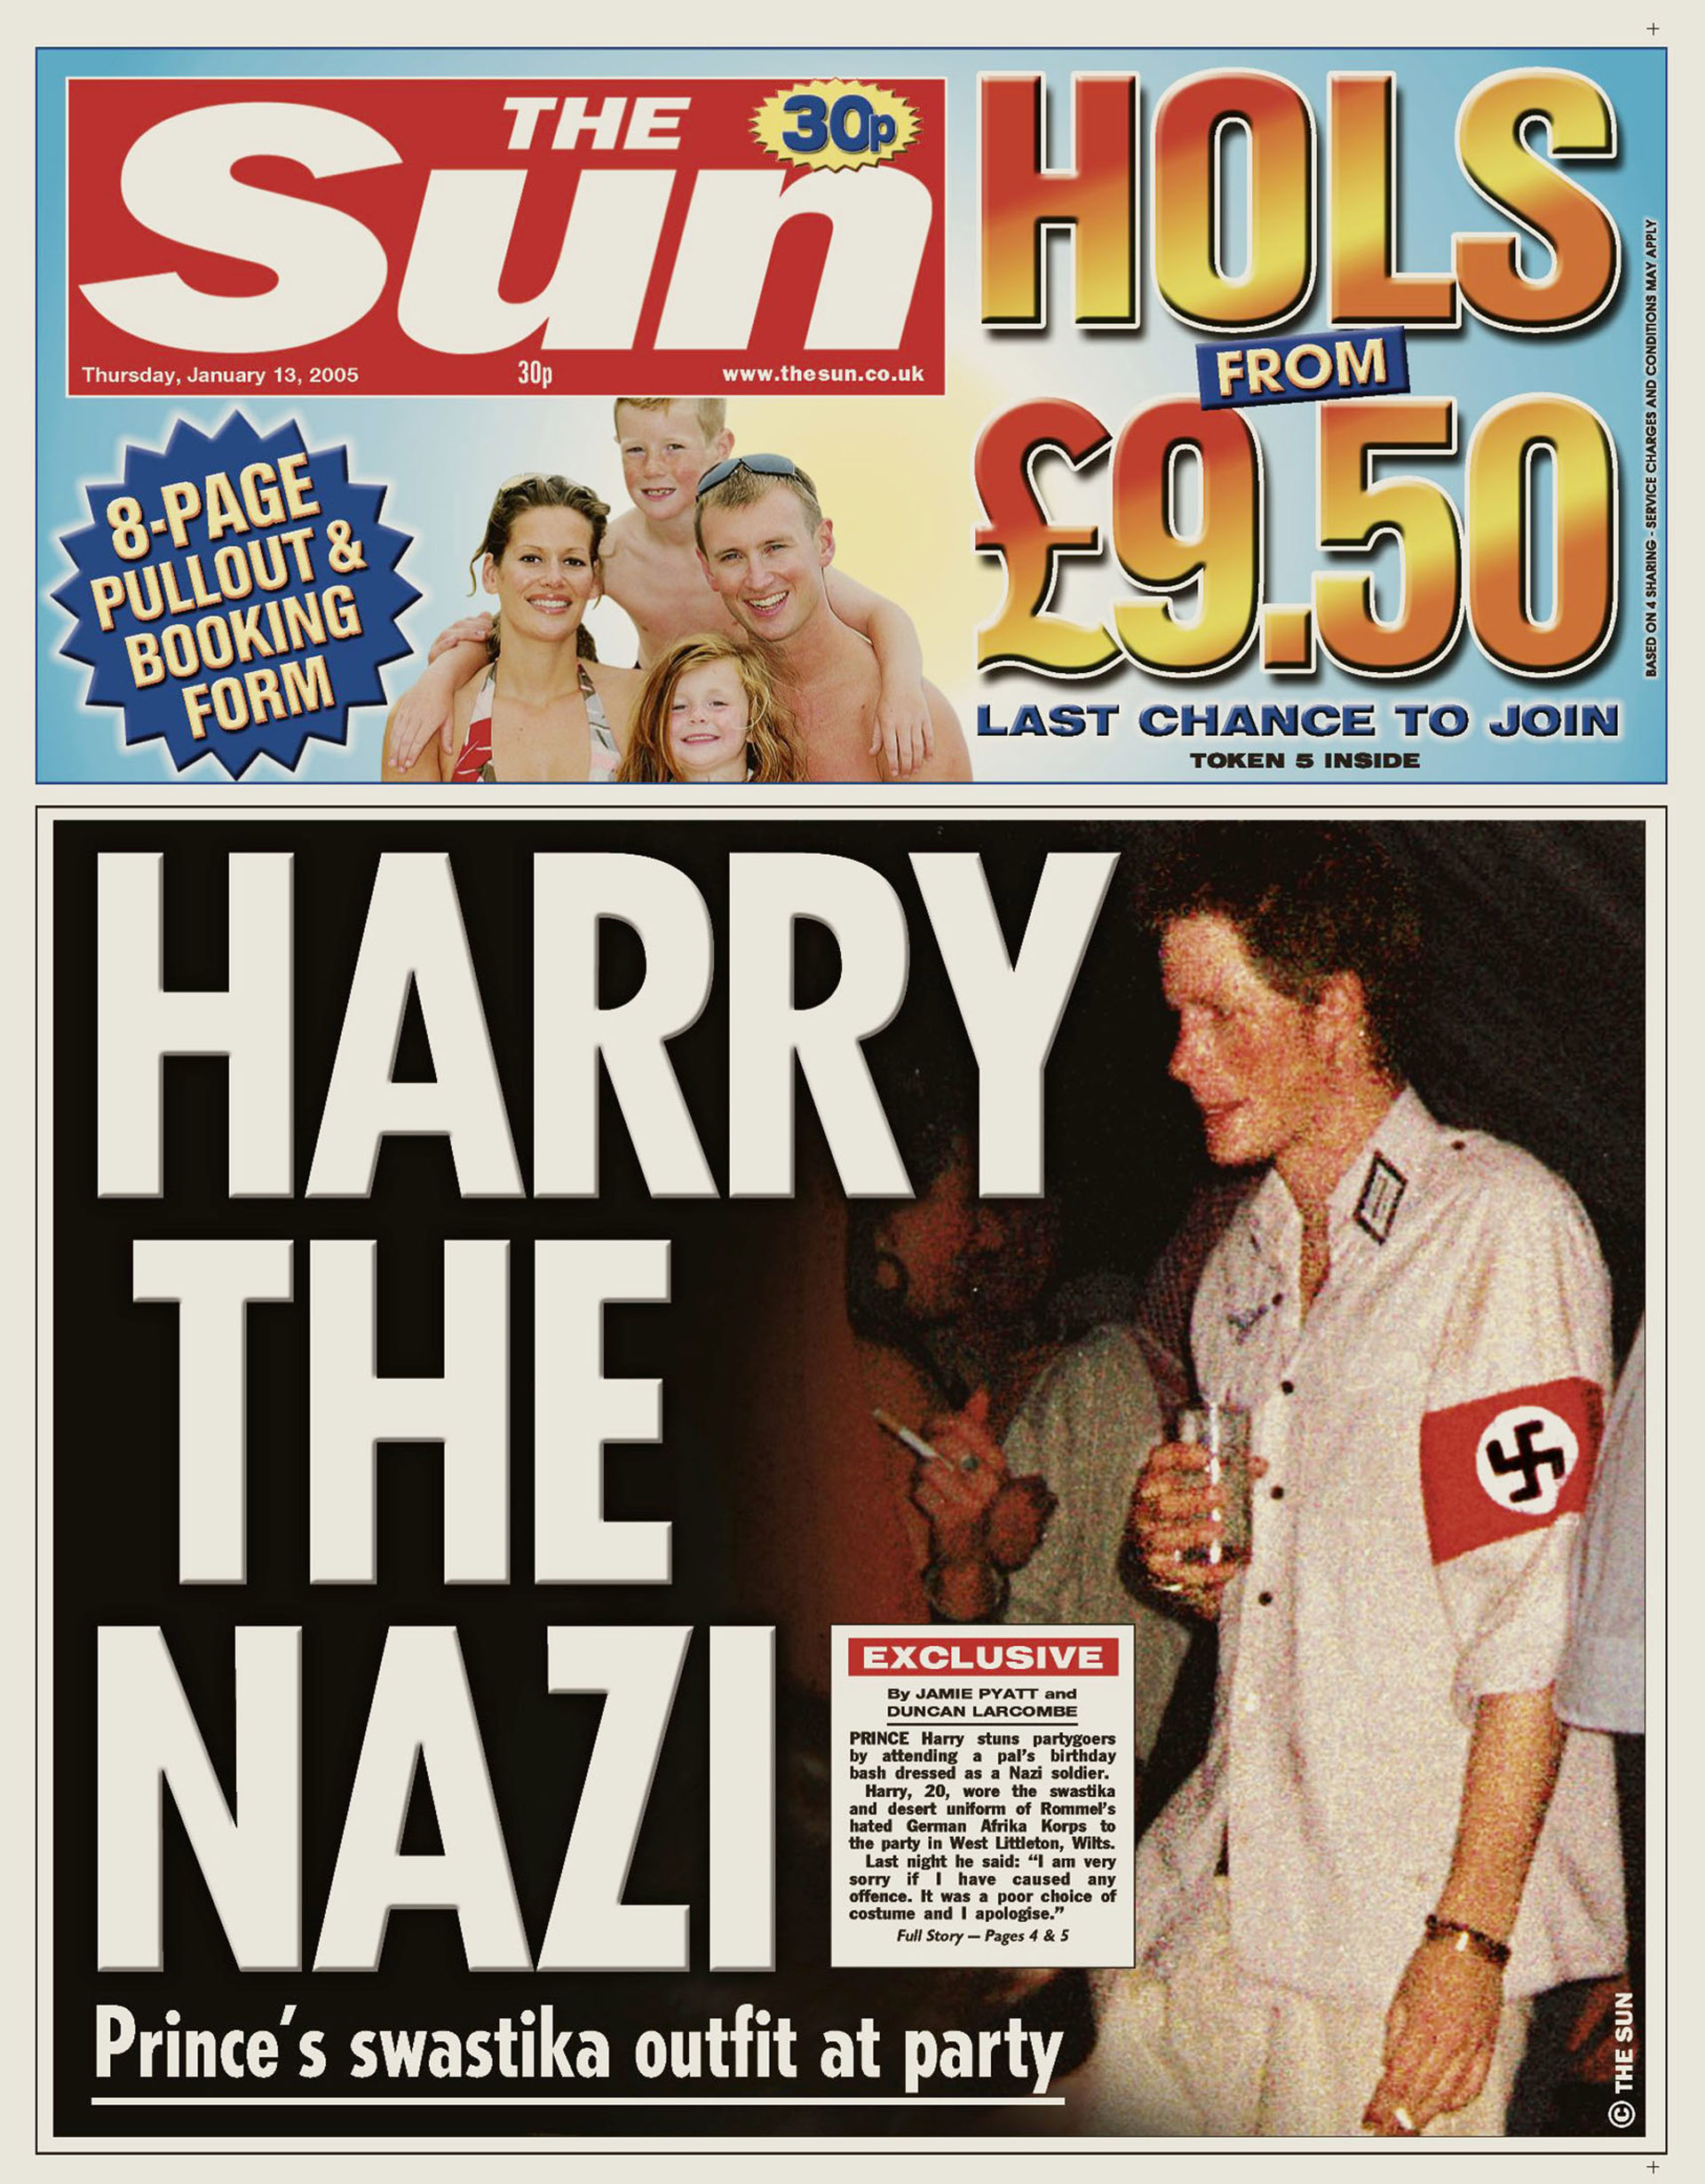 Una fotografía de archivo muestra una copia electrónica de la portada del periódico The Sun del 13 de enero de 2005 en la que aparece una fotografía del príncipe Harry de Gran Bretaña con un brazalete rojo y negro con la esvástica y una camisa del ejército con atuendos nazis en la fiesta de un amigo en un lugar no identificado a la que asistió el 8 de enero de 2005 (The Sun)